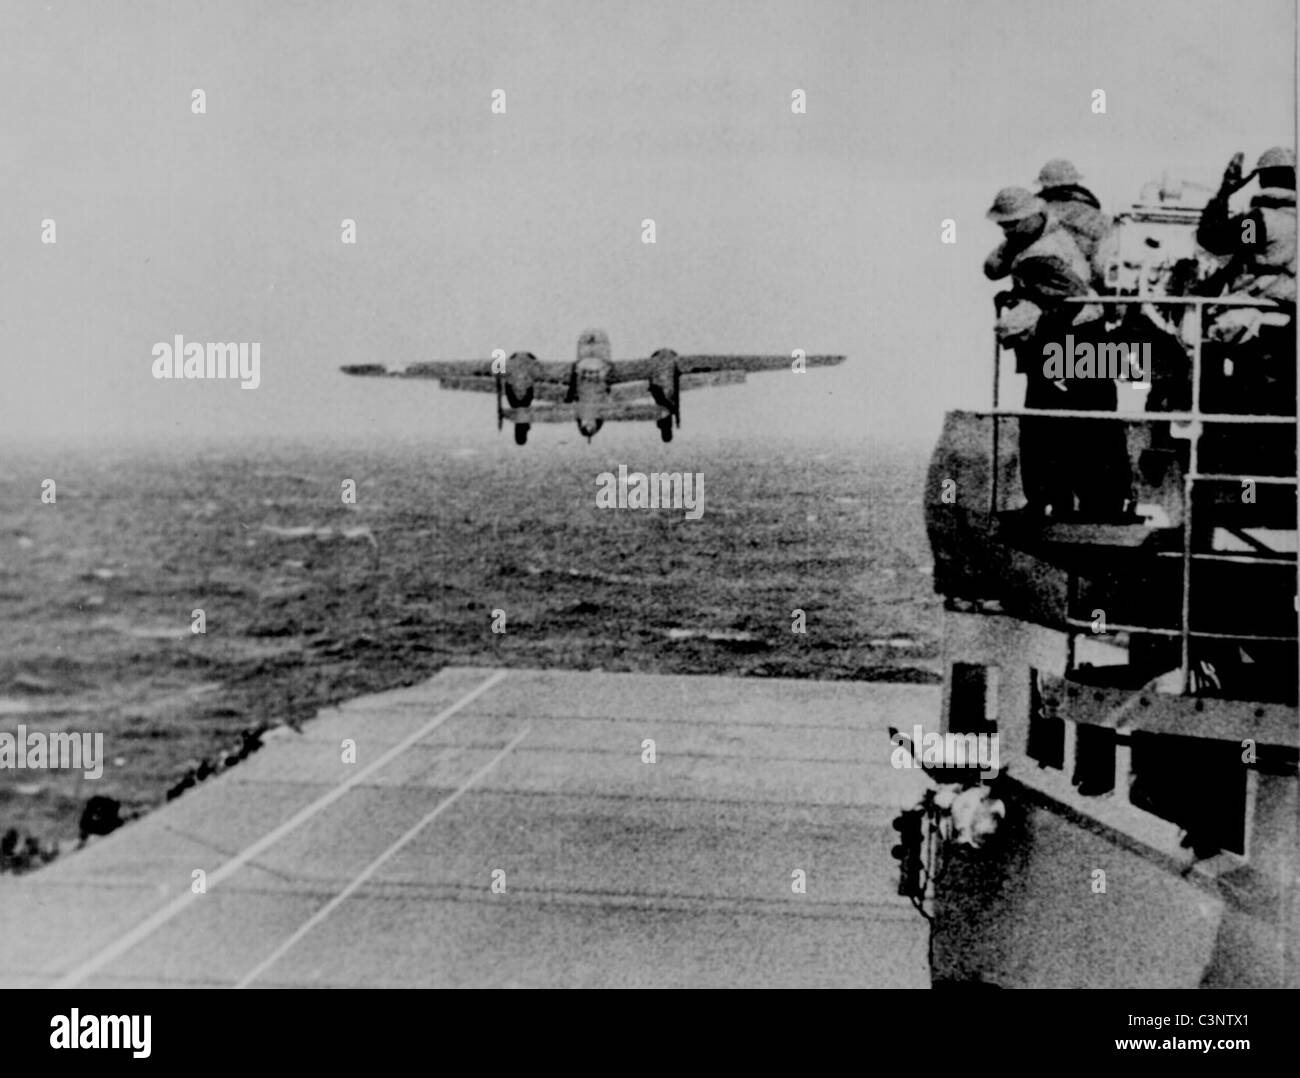 Nehmen Sie vom Deck der USS Hornet von einem Armee-b-25 auf dem Weg zum ersten US-Luftangriff auf Japan teilnehmen. Doolittle Raid Stockfoto